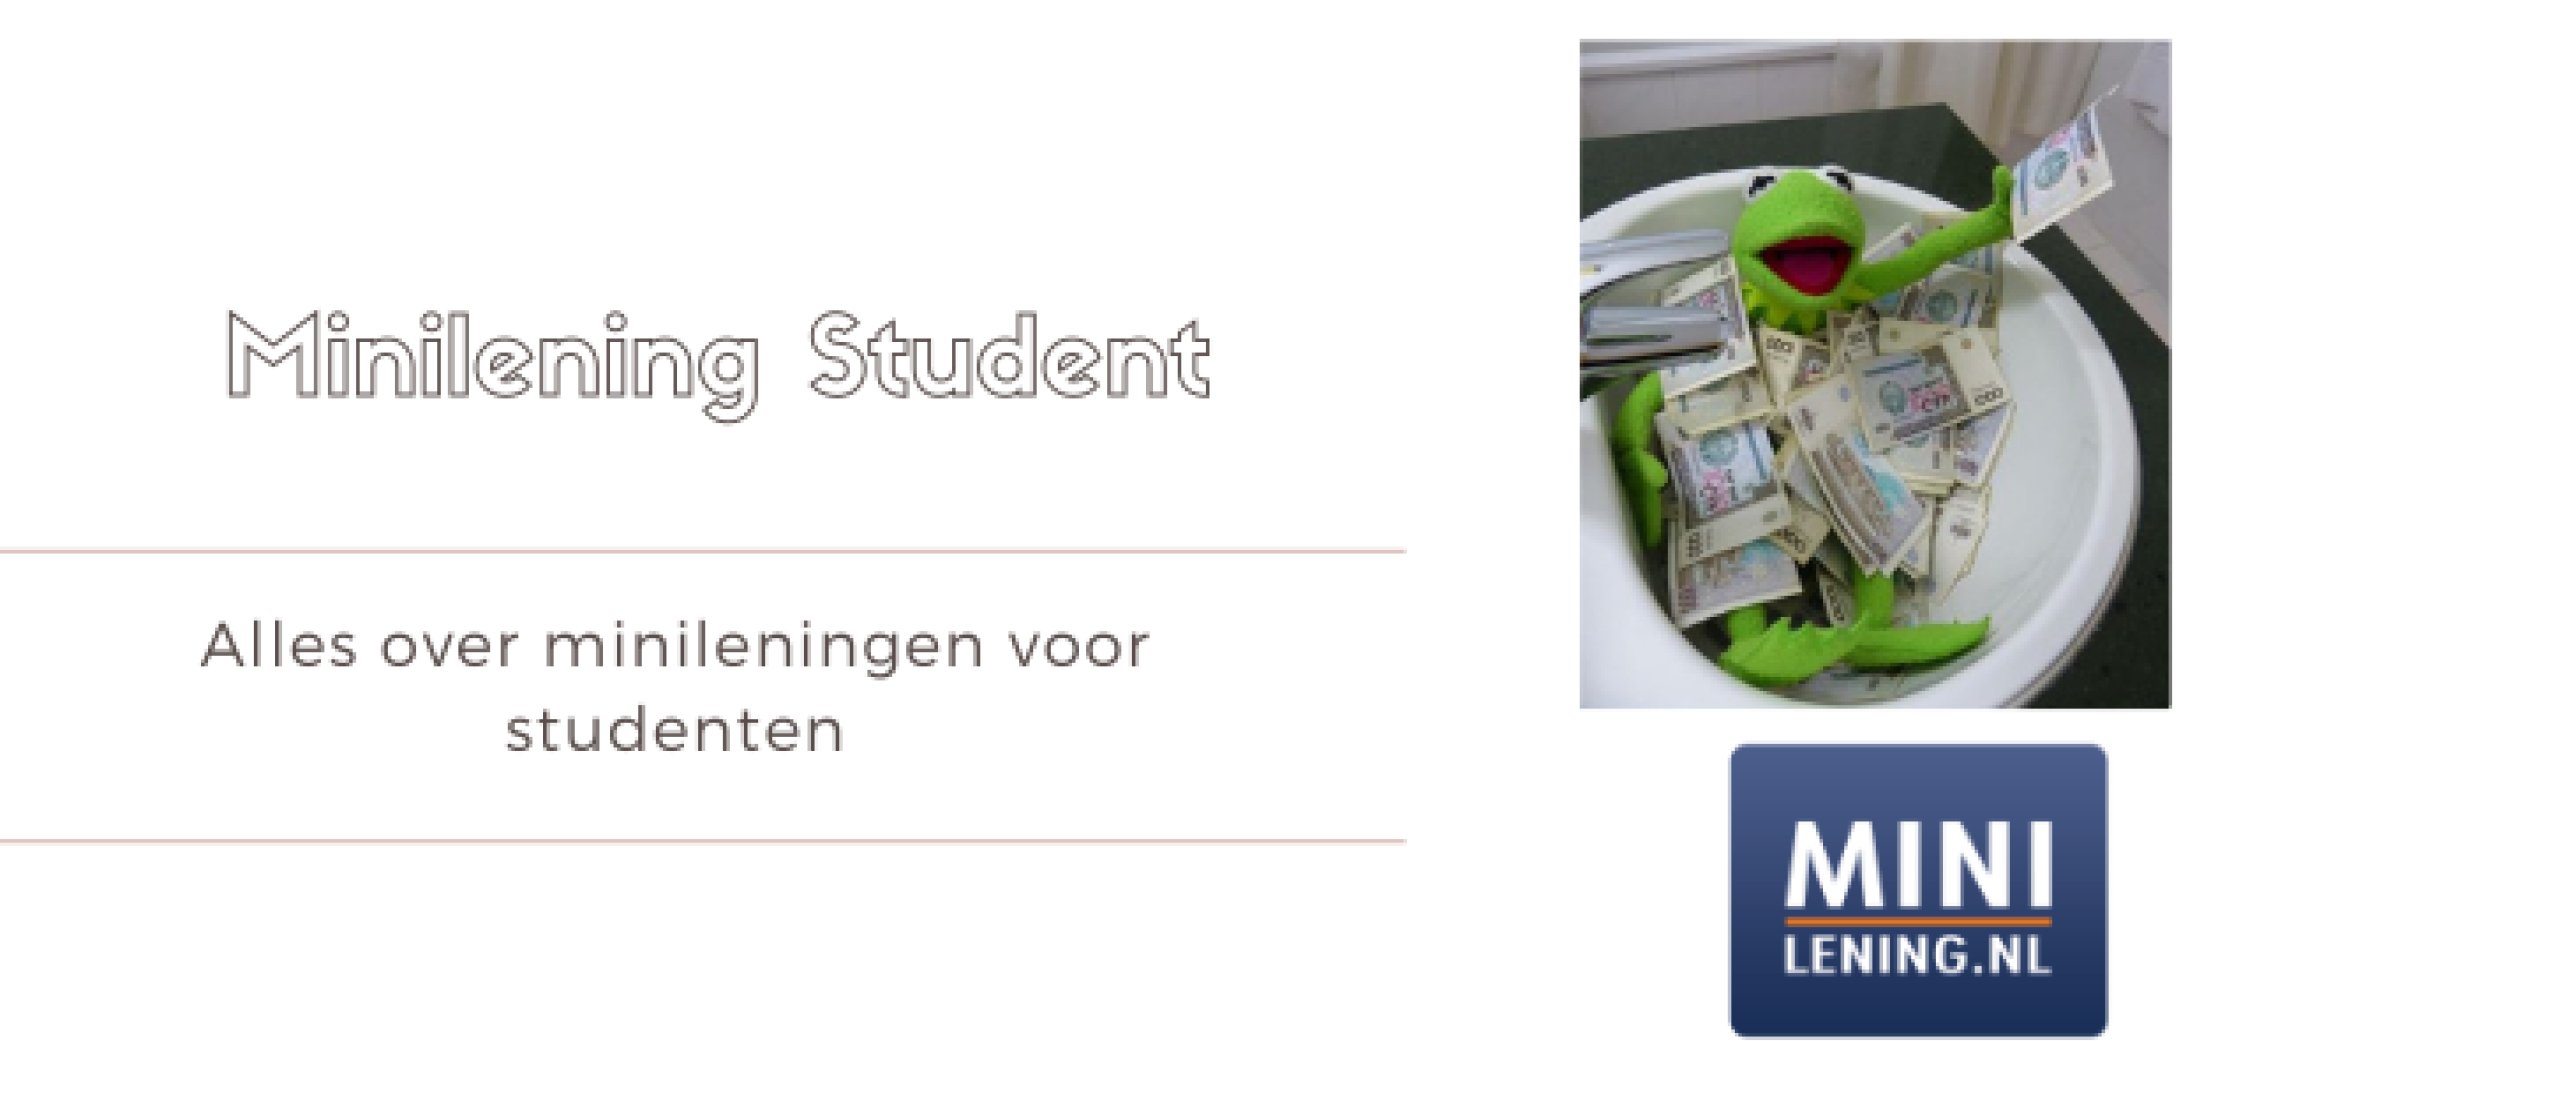 Minilening als Student Aanvragen Tijdens Studie | Minilening.nl